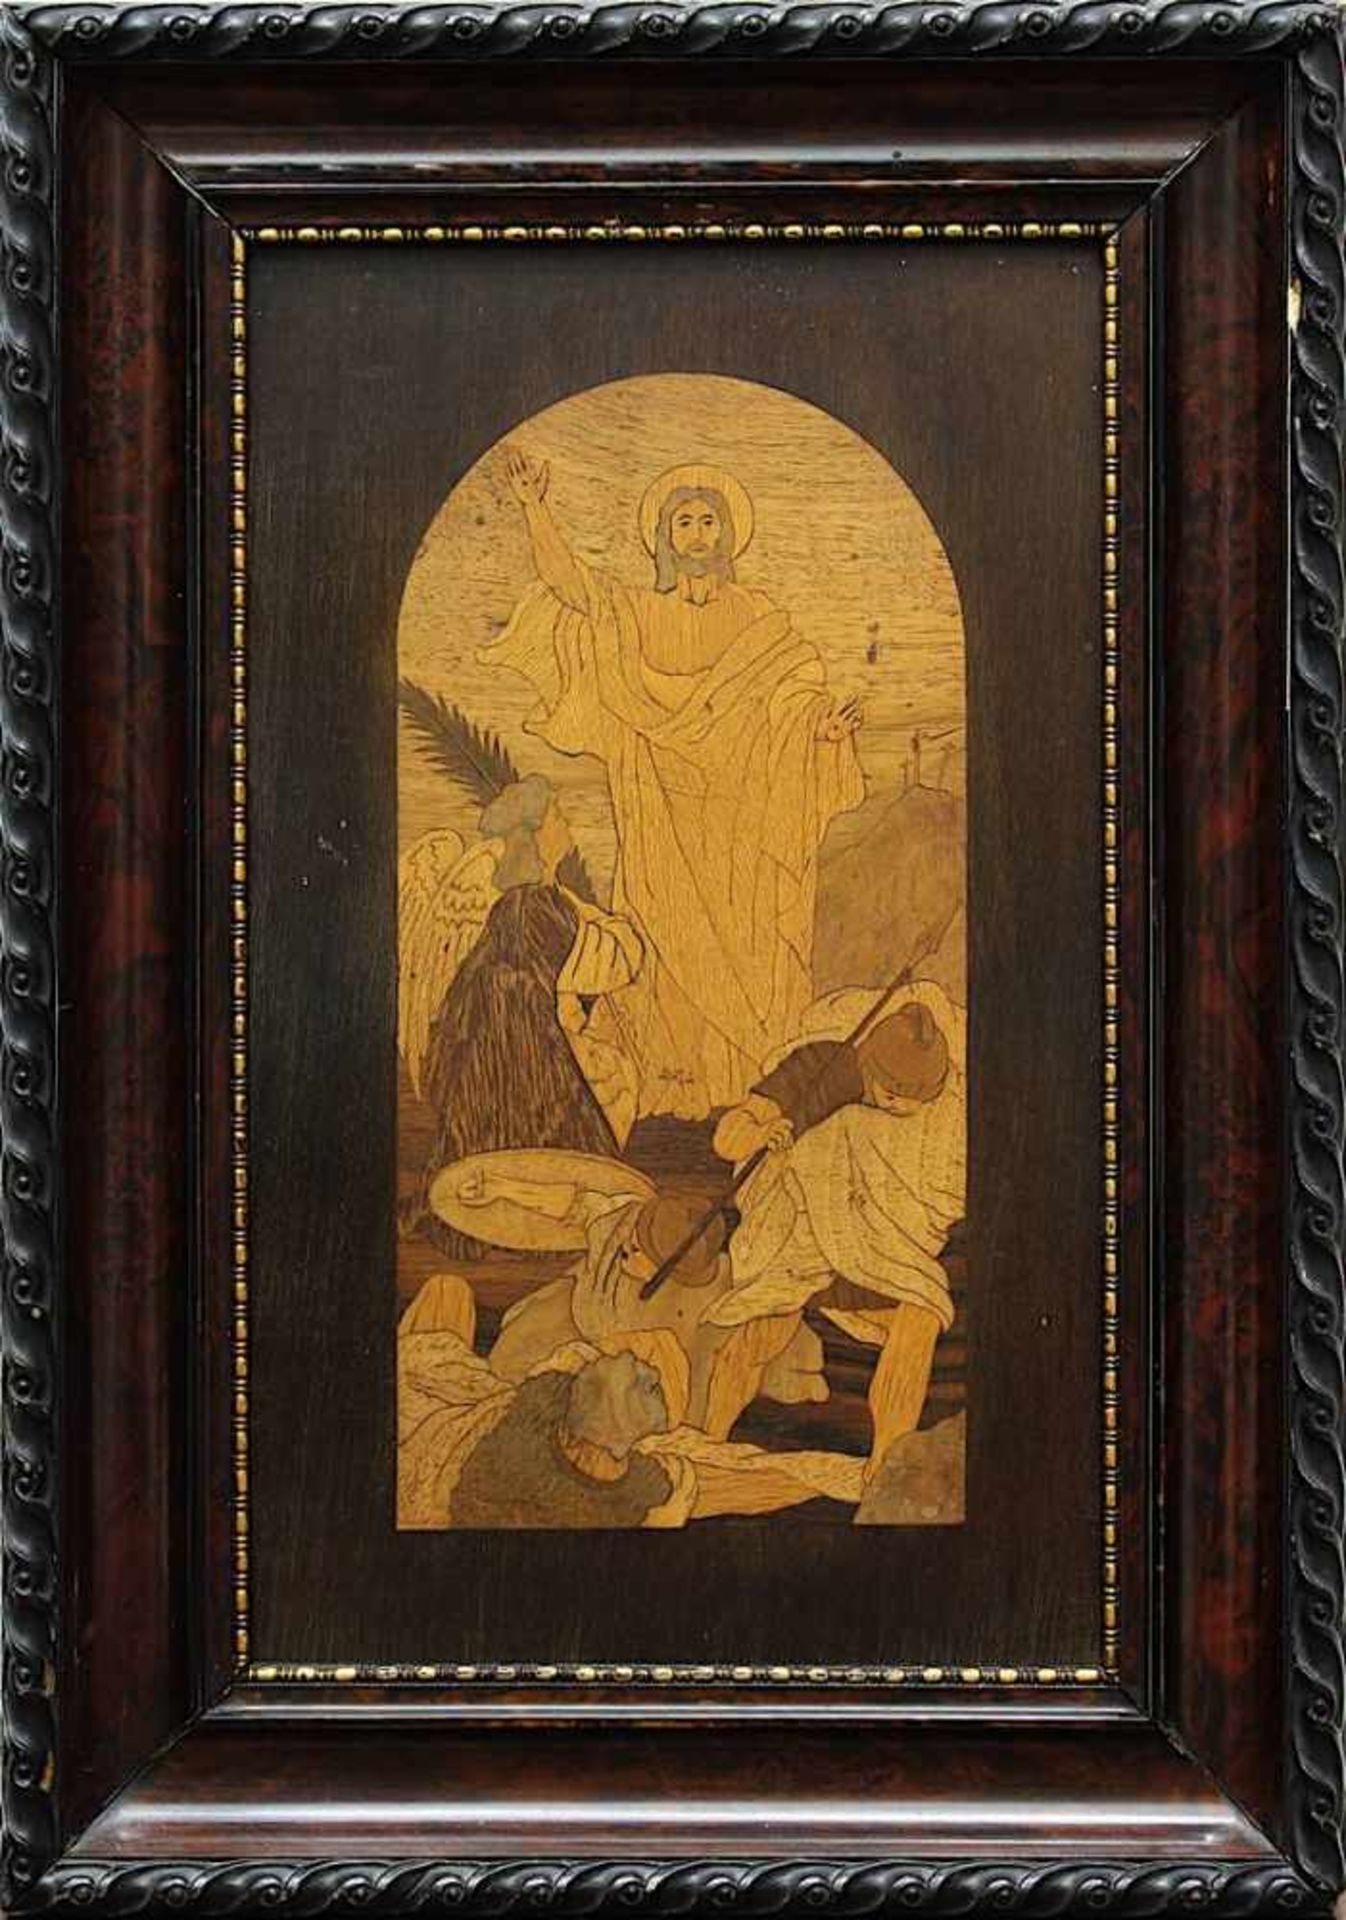 Intarsienbild um 1900, der auferstandene Christus mit Engel und dem erschrockenen Soldaten,